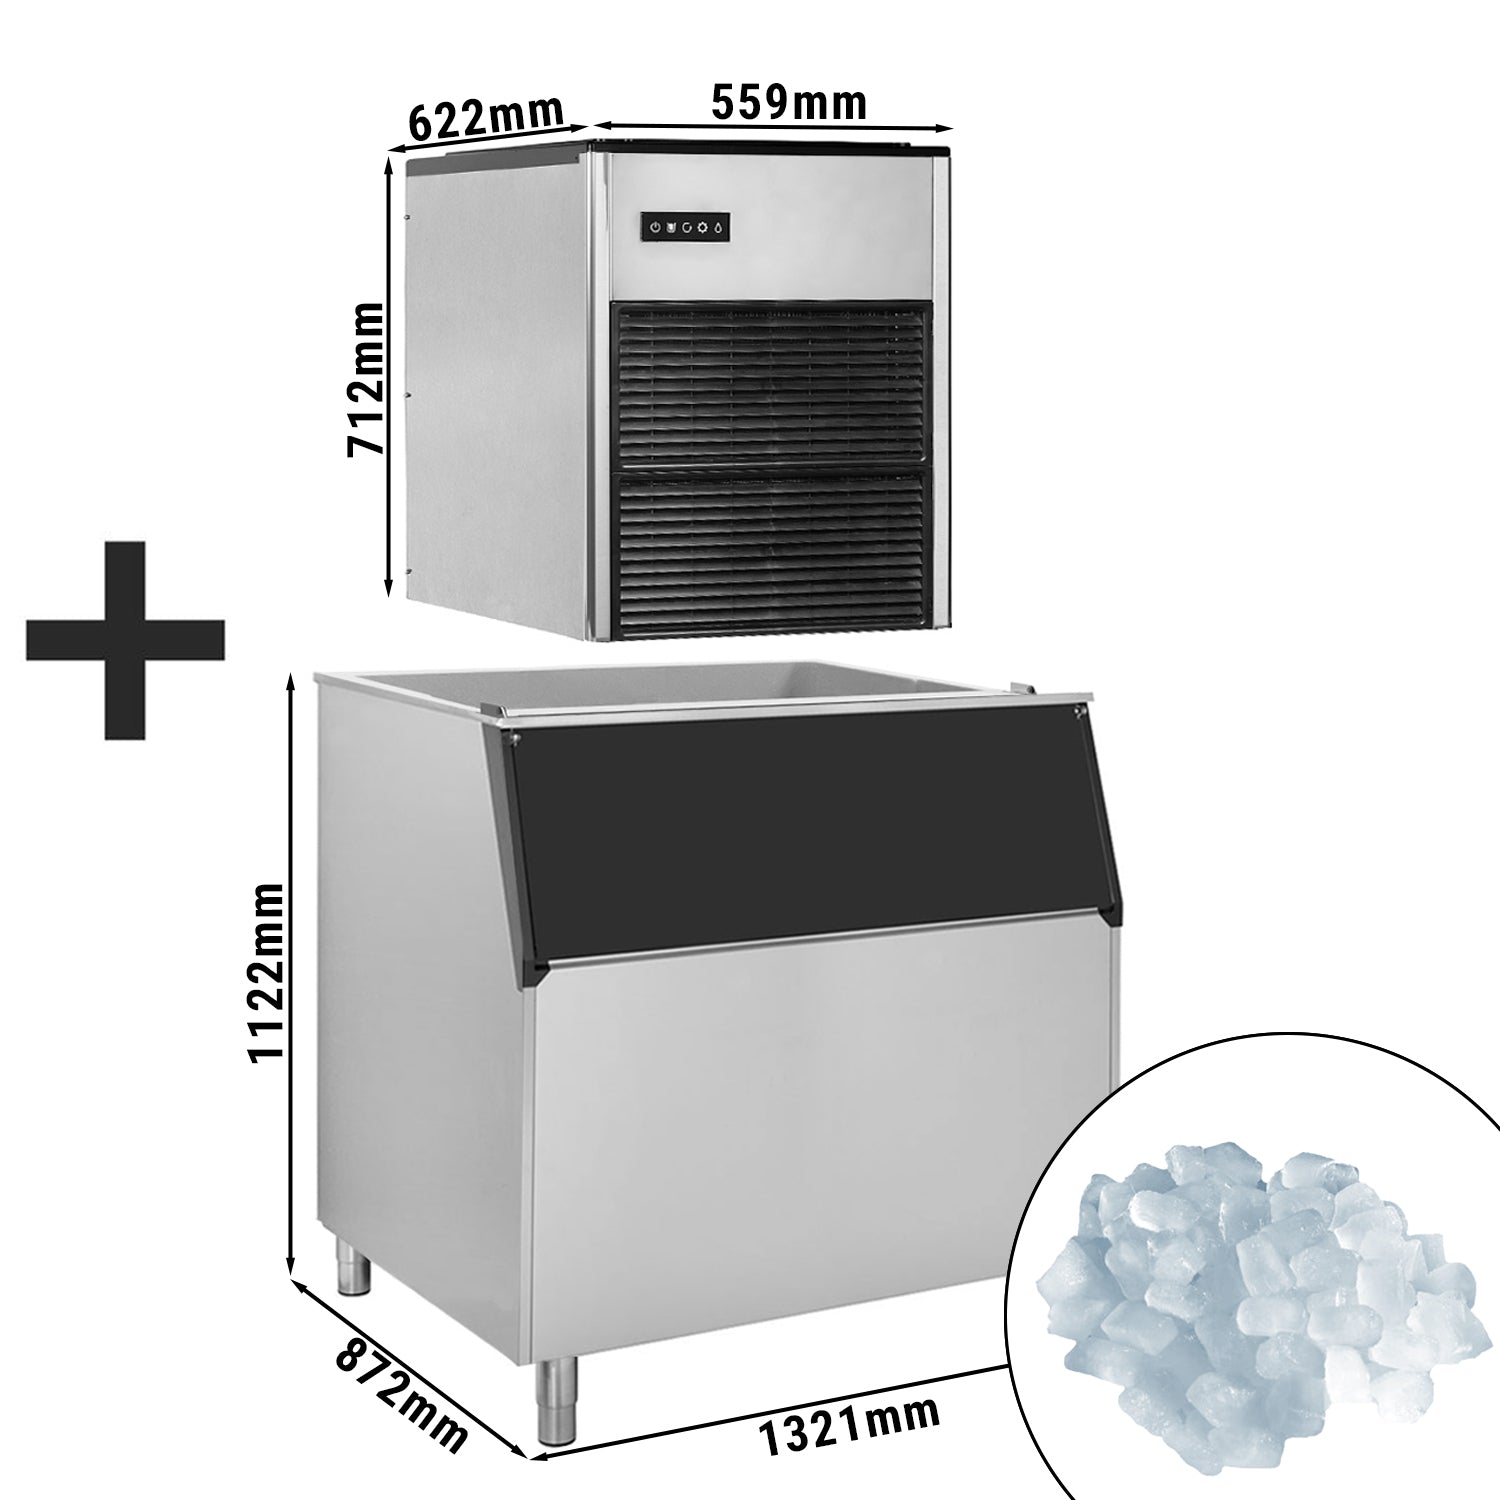 Машина за кубчета лед / машина за кубчета лед - 335 кг / 24 часа - вкл. Контейнер за съхранение на лед